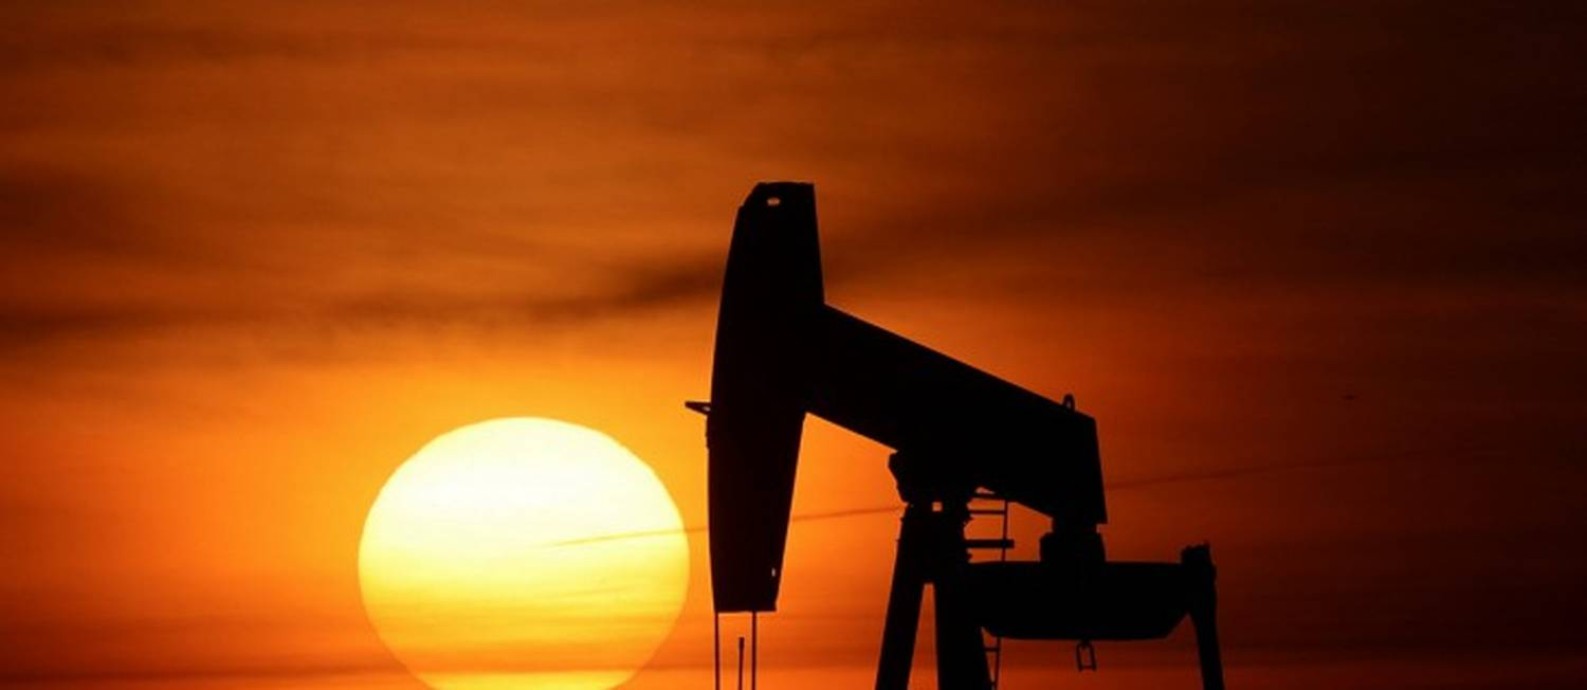 Diante da escalada do petróleo no exterior, empresas buscam acelarar investimentos. Foto: PASCAL ROSSIGNOL / Reuters